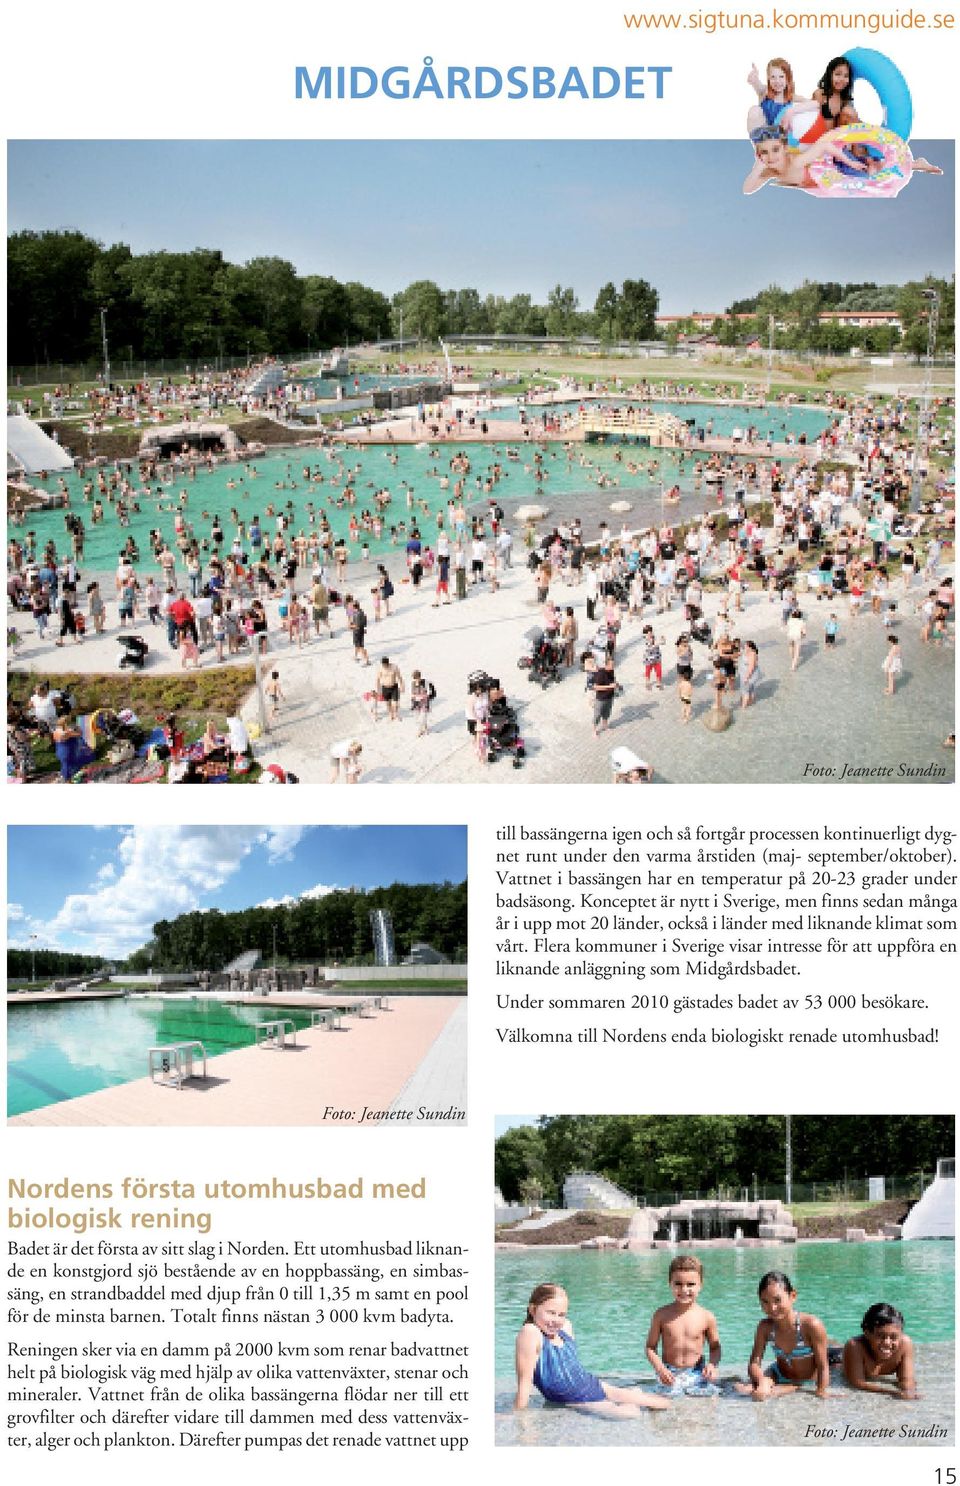 Flera kommuner i Sverige visar intresse för att uppföra en liknande anläggning som Midgårdsbadet. Under sommaren 2010 gästades badet av 53 000 besökare.